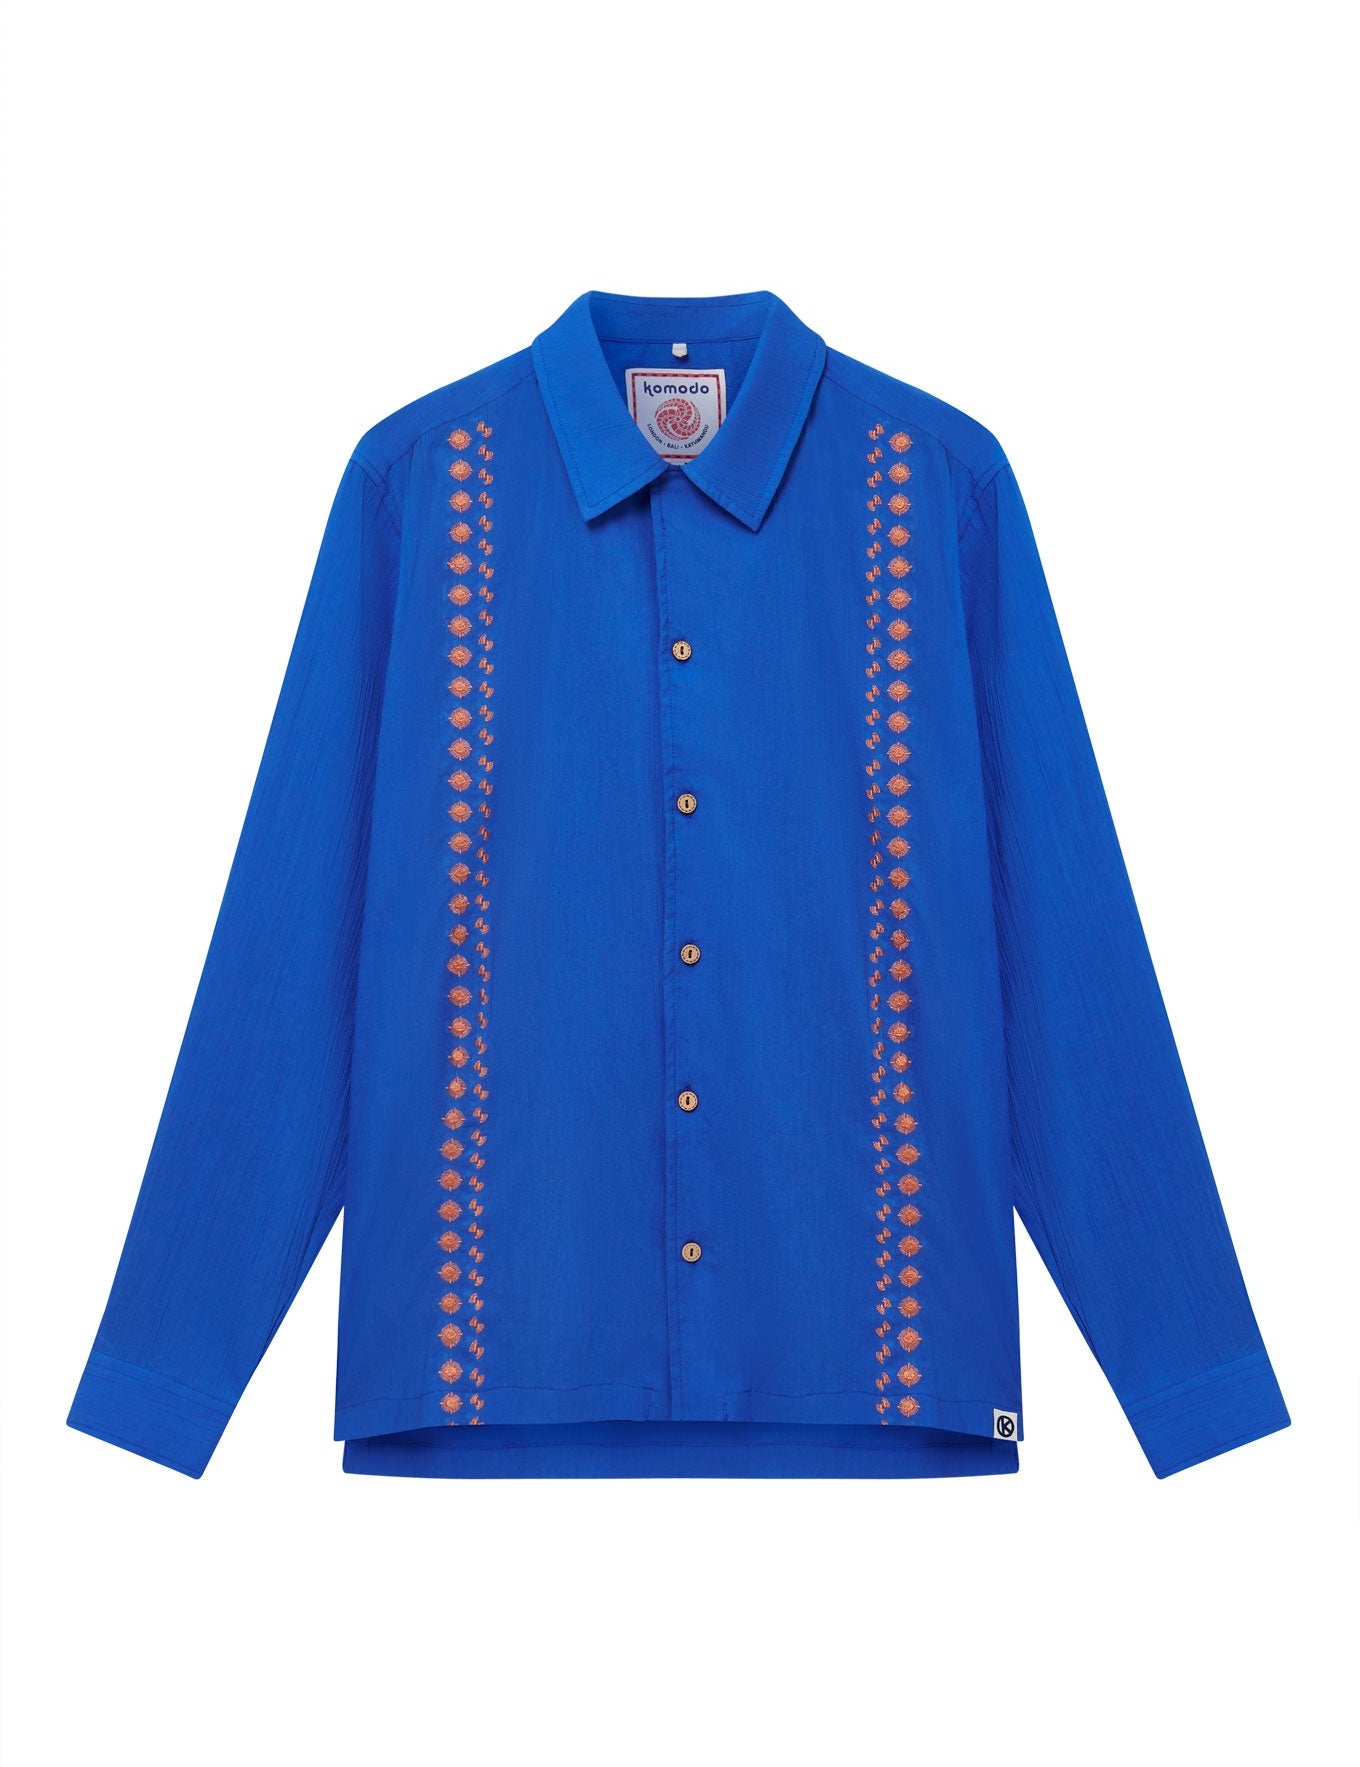 C1-OCV-59BF-nile-shirt---bali-fans-embroidery-sapphire-blue_801b8d92-e566-4148-a42f-adfb9d160ab5.jpg